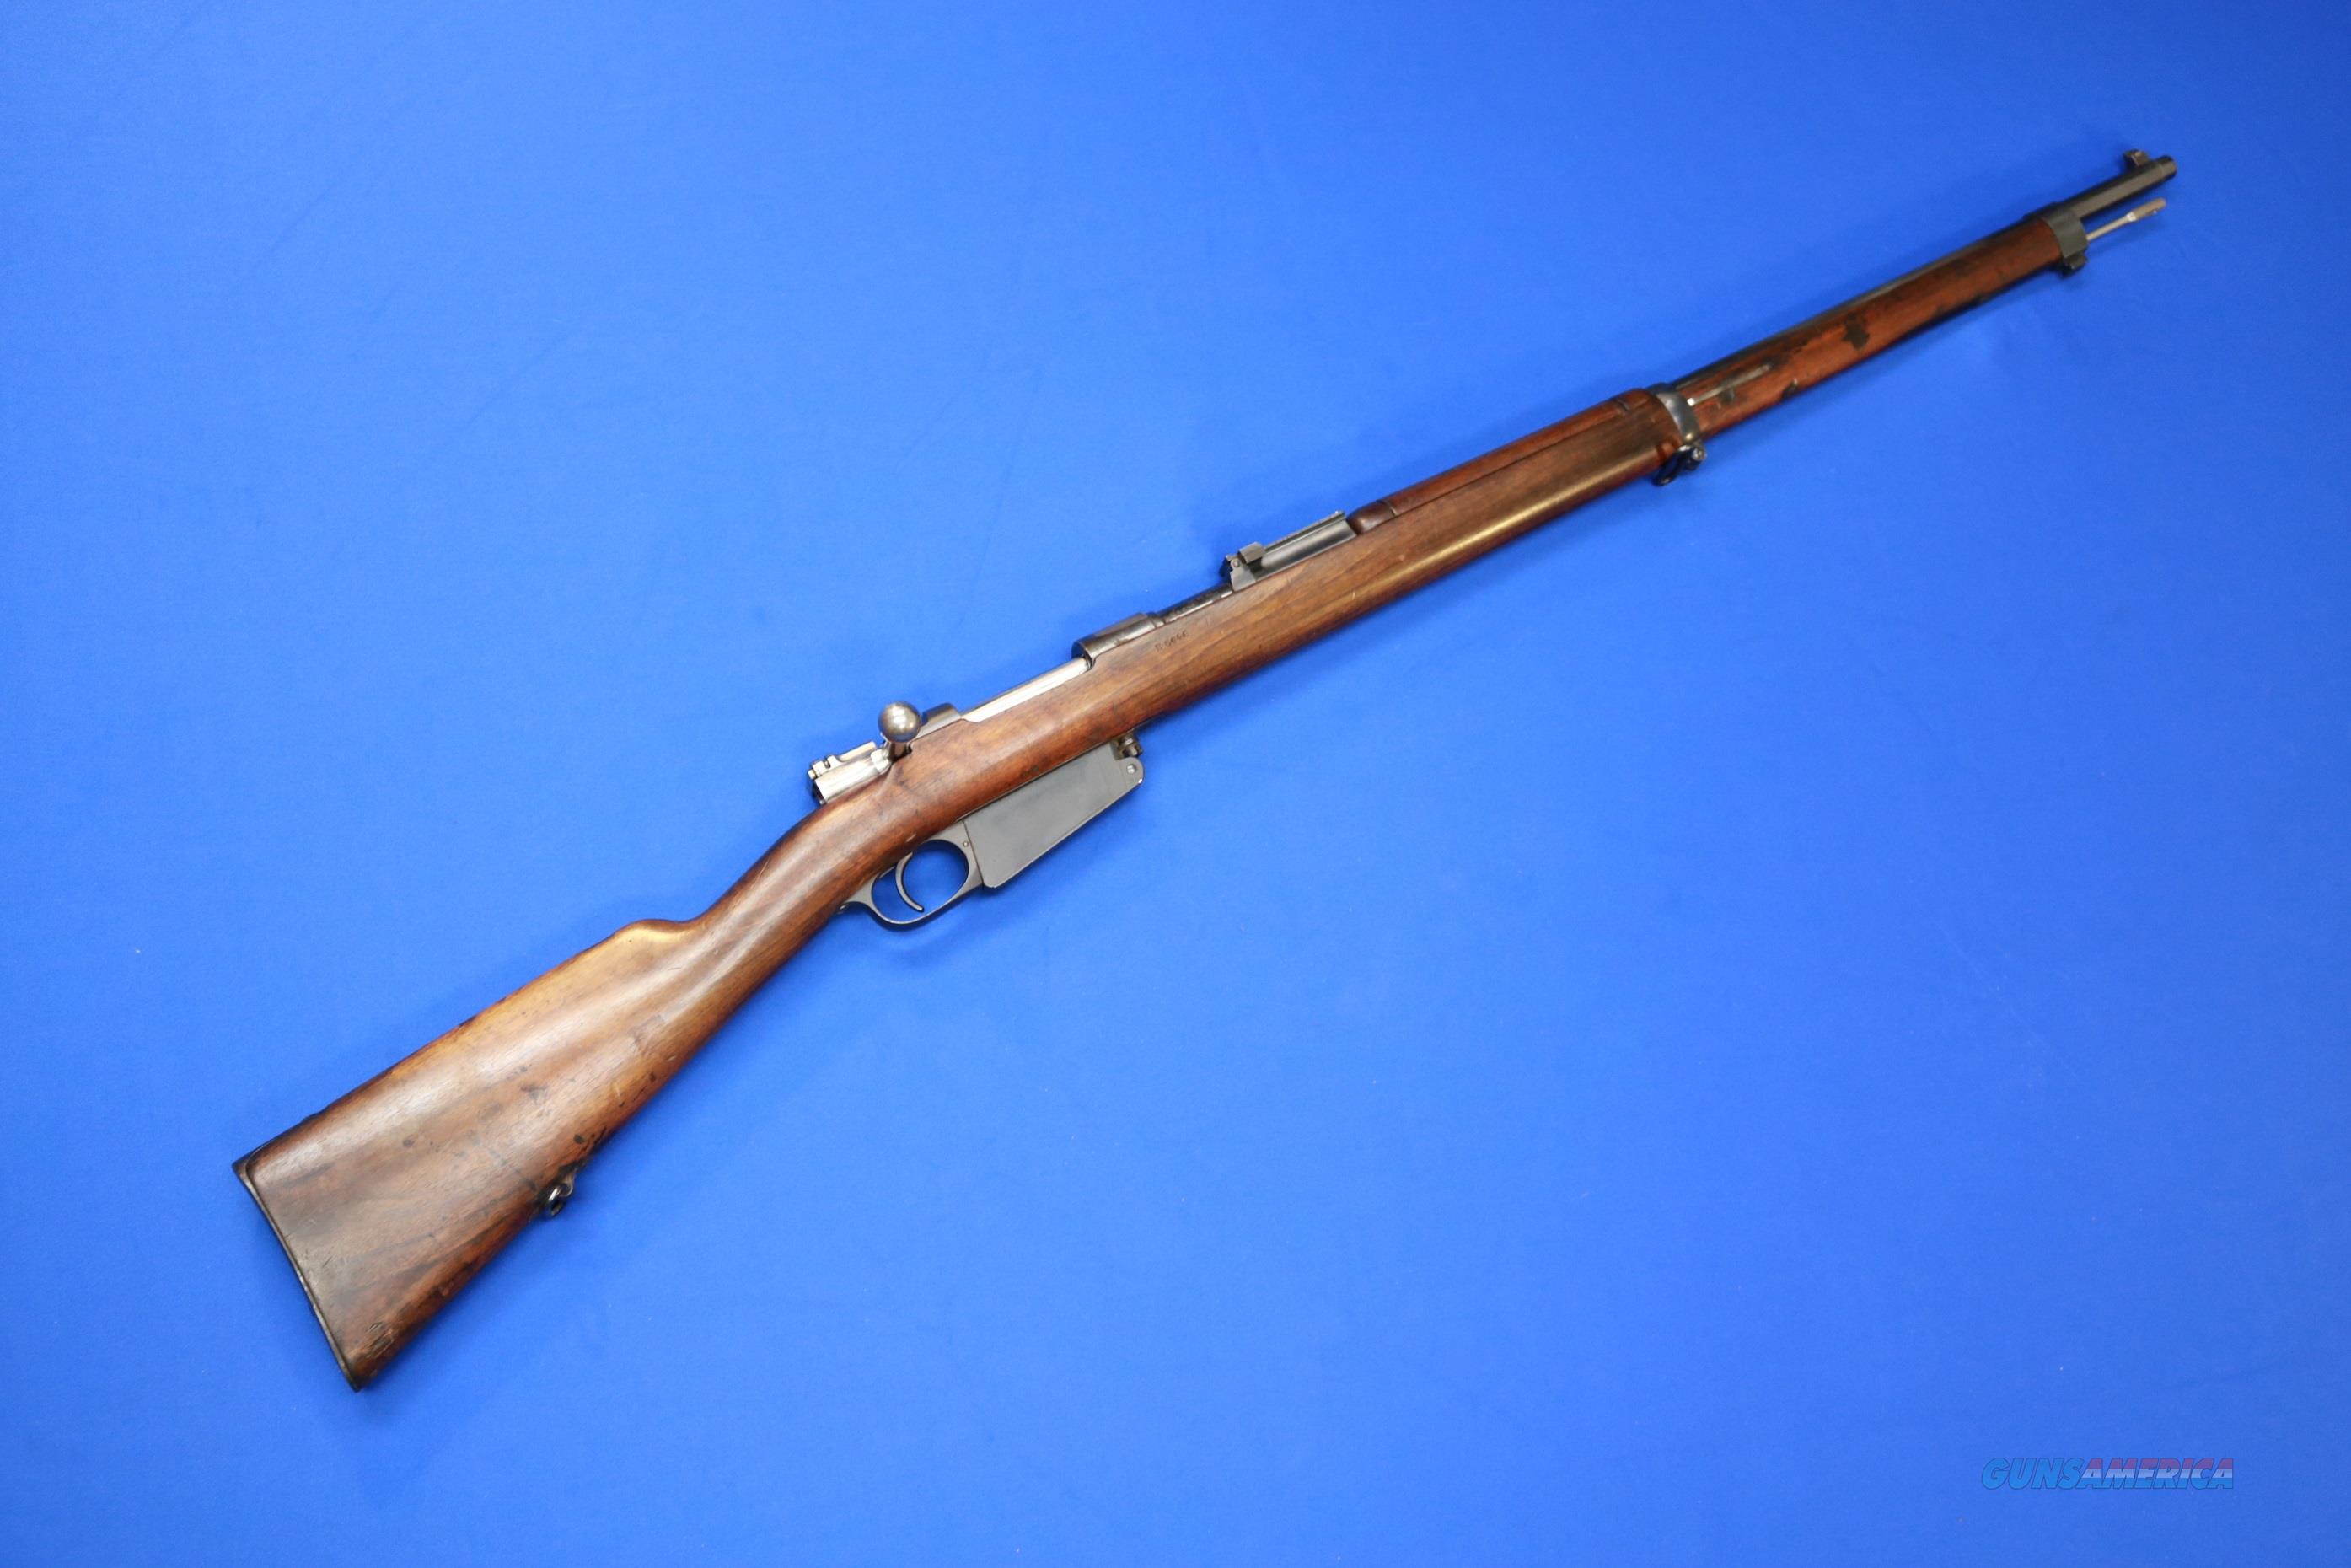 argentin german mauser rifle